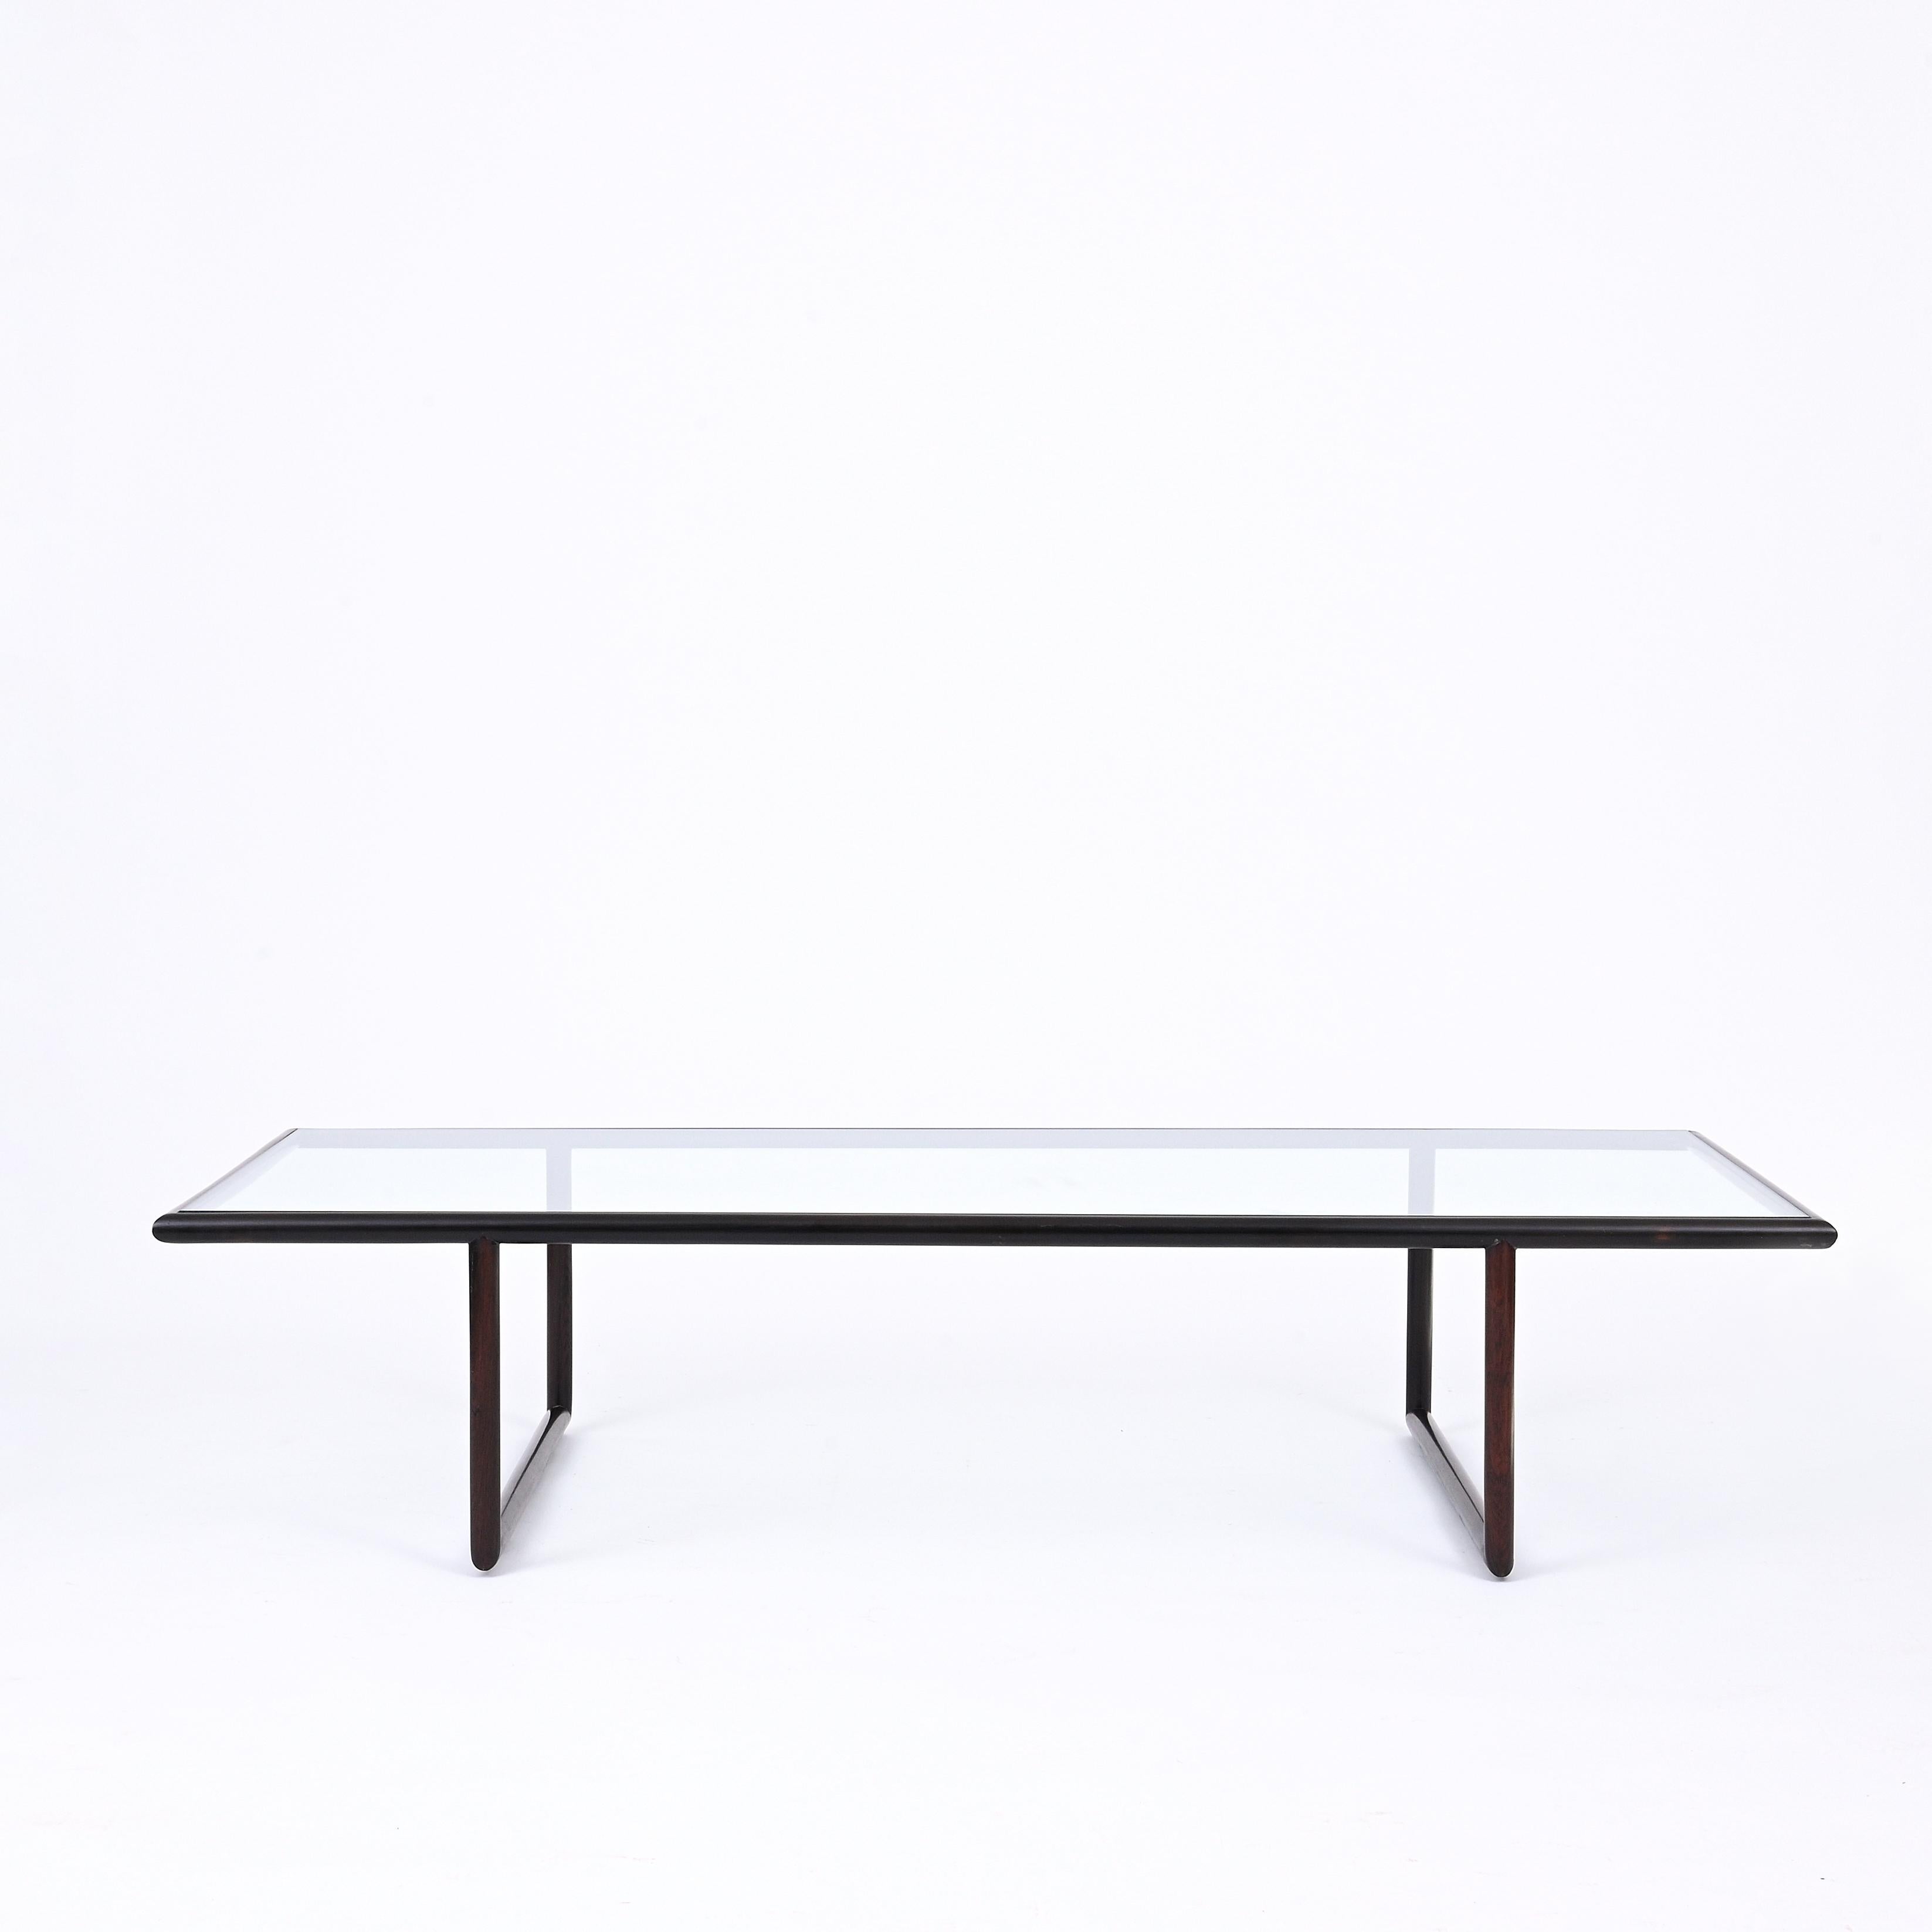 La table basse de Joaquim Tenreiro est une pièce rare et unique dans le domaine du mobilier brésilien du milieu du XXe siècle. Artistics avec une attention méticuleuse aux détails et imprégnée d'une vision artistique distincte, cette table met en